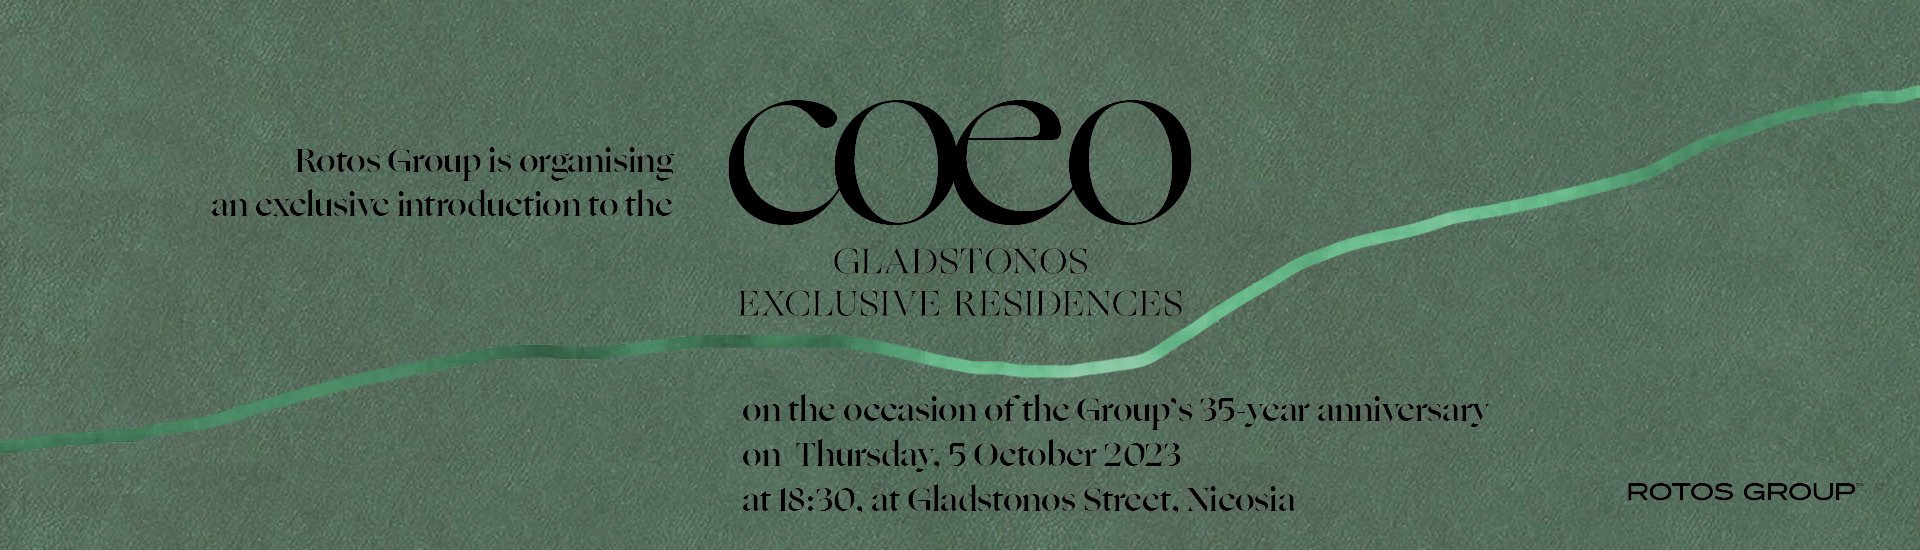 Coeo Gladstonos Exclusive Residences